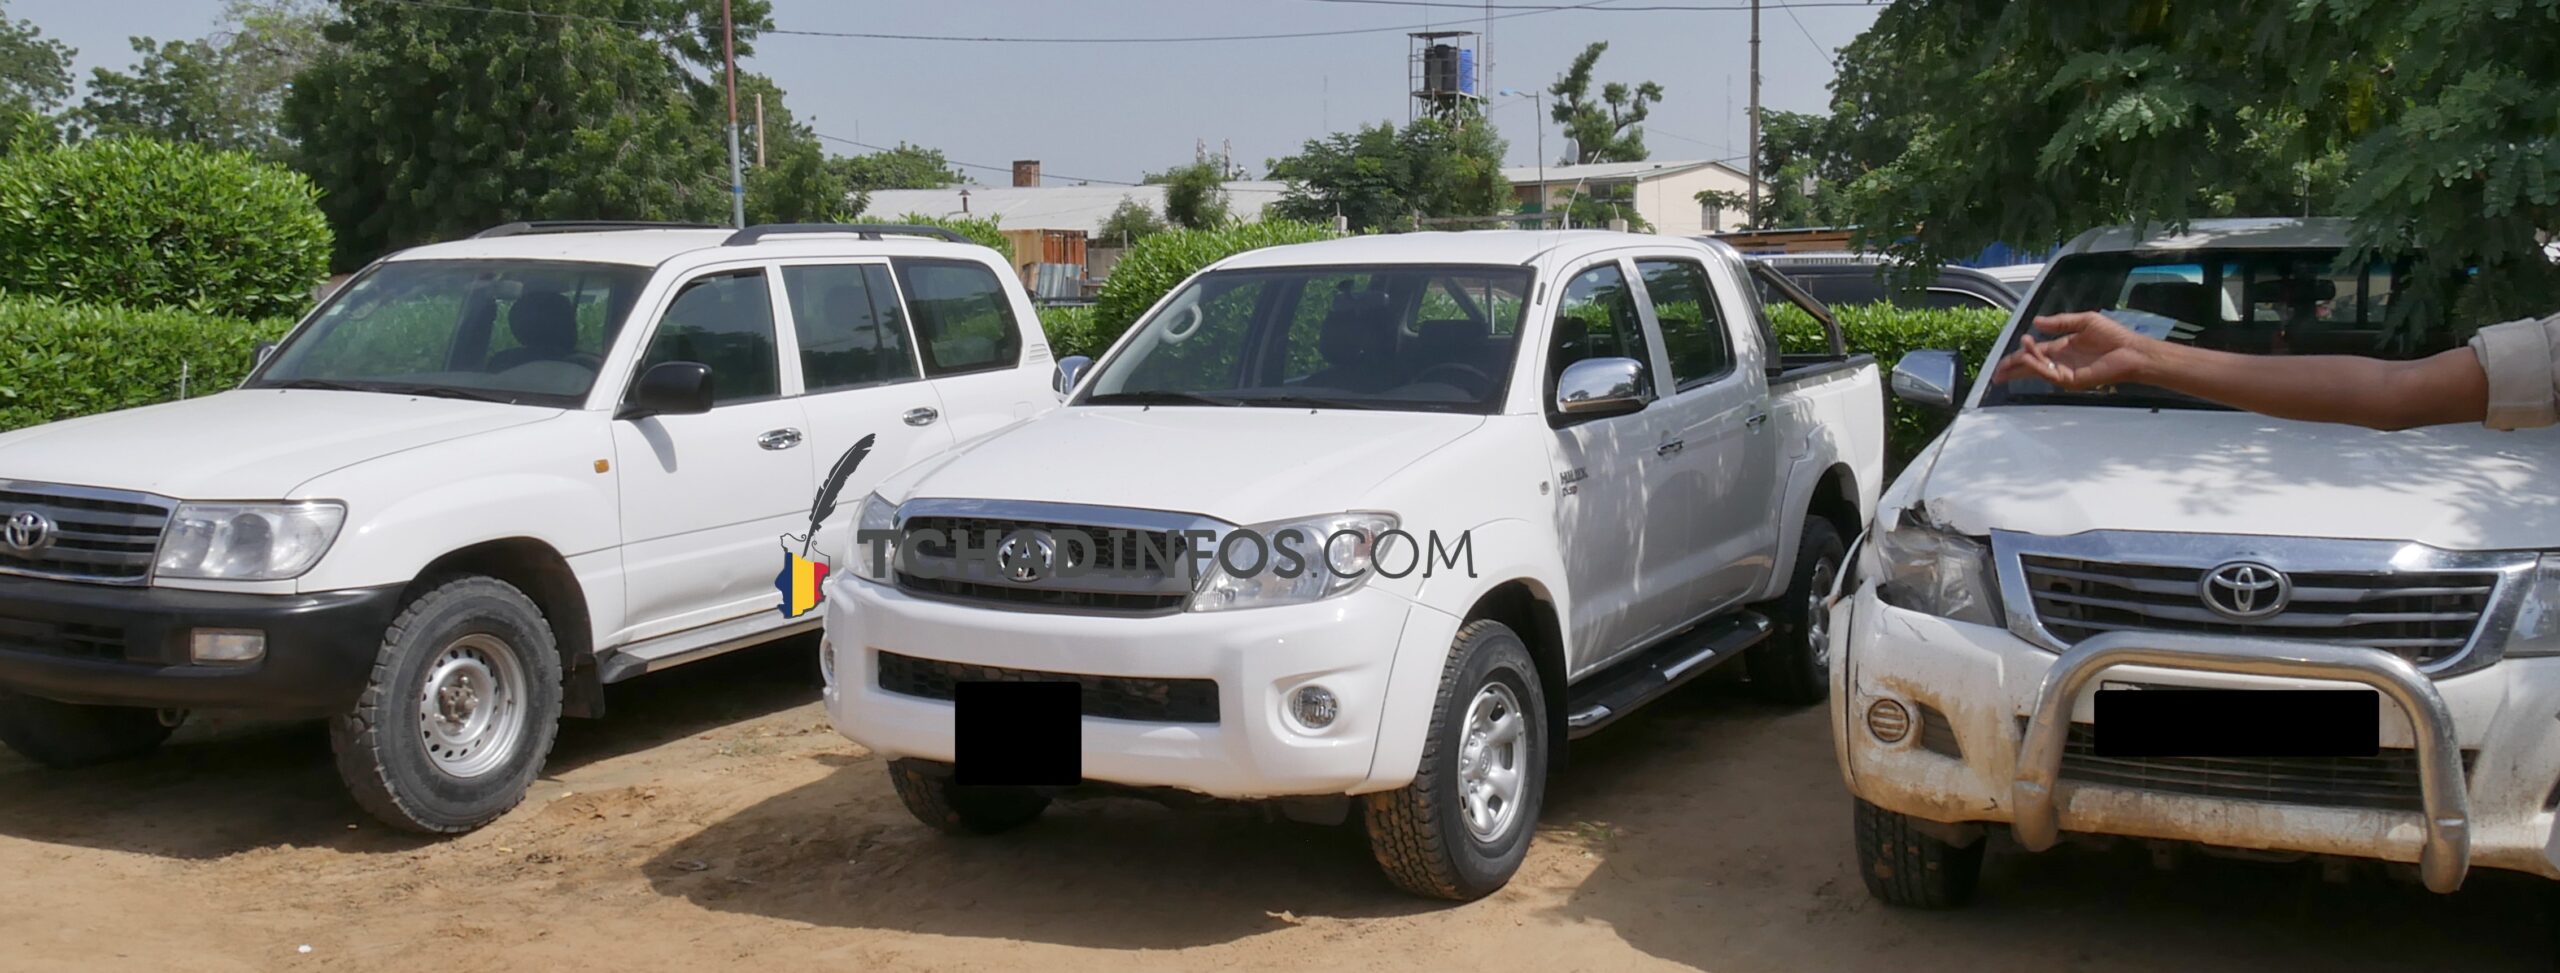 Tchad : le vol des véhicules va grandissant à N’Djamena